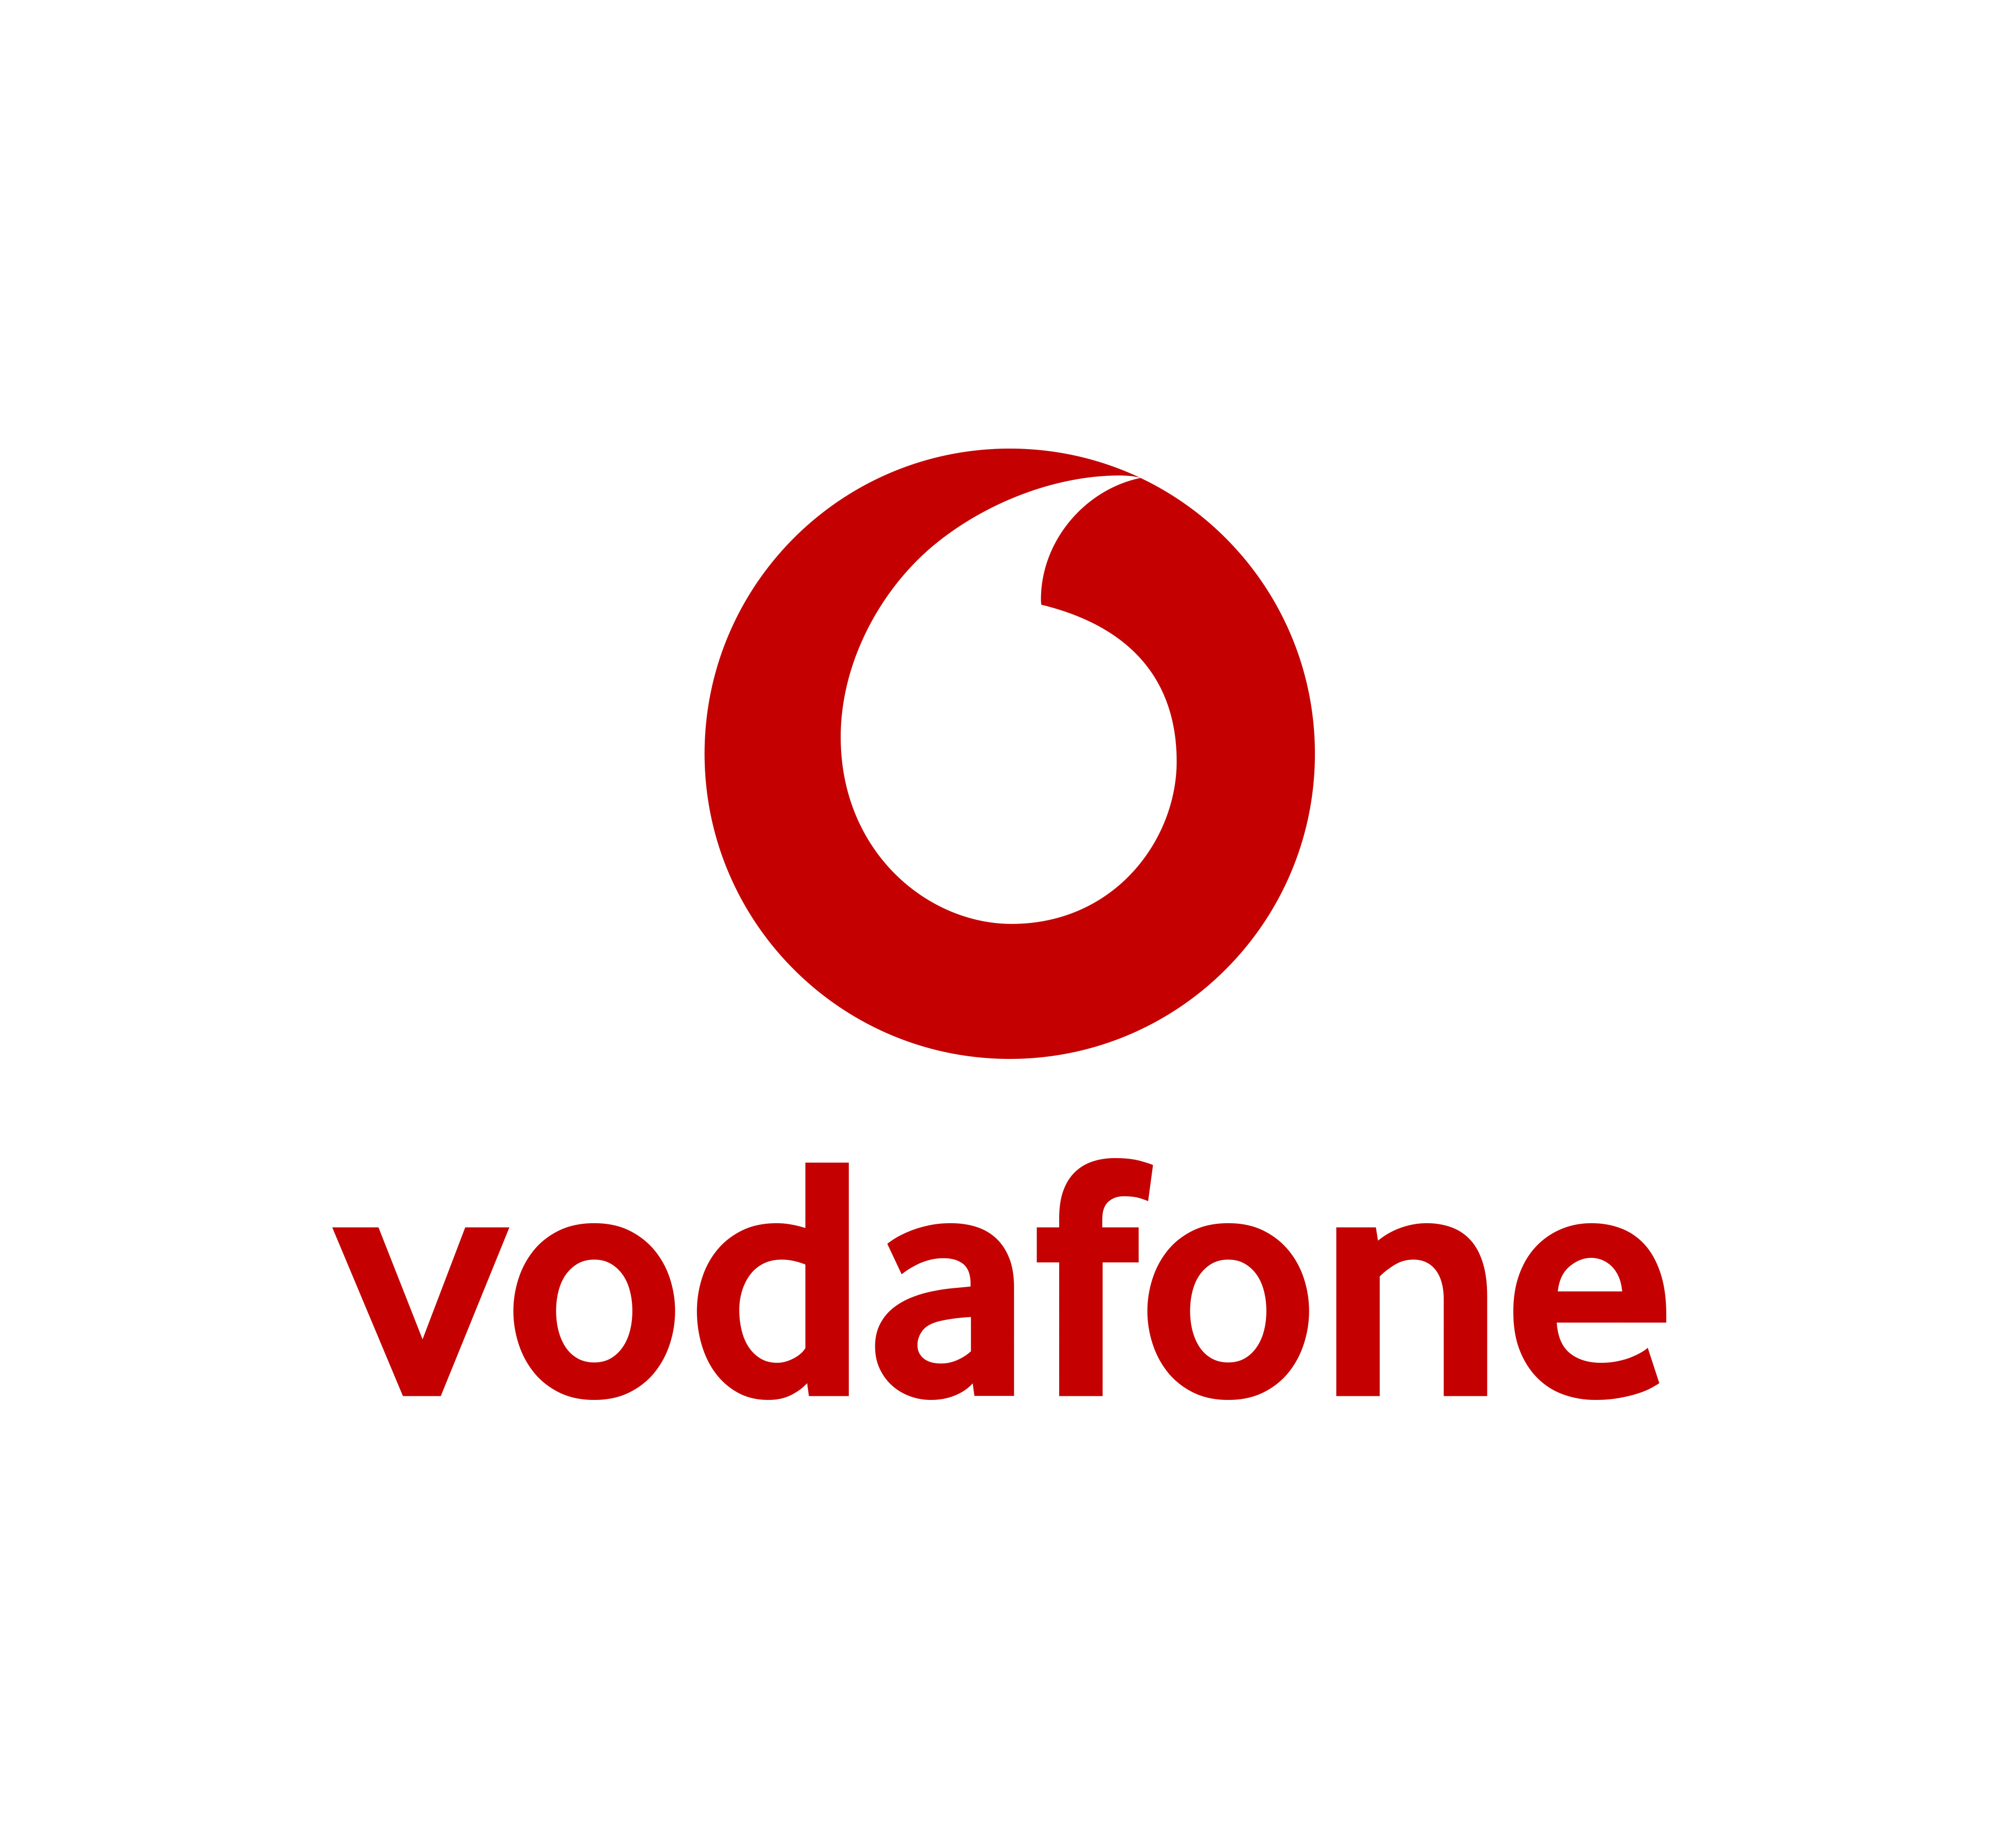 Tu hogar más seguro por ser Vodafone. - C.C. Las Rosas